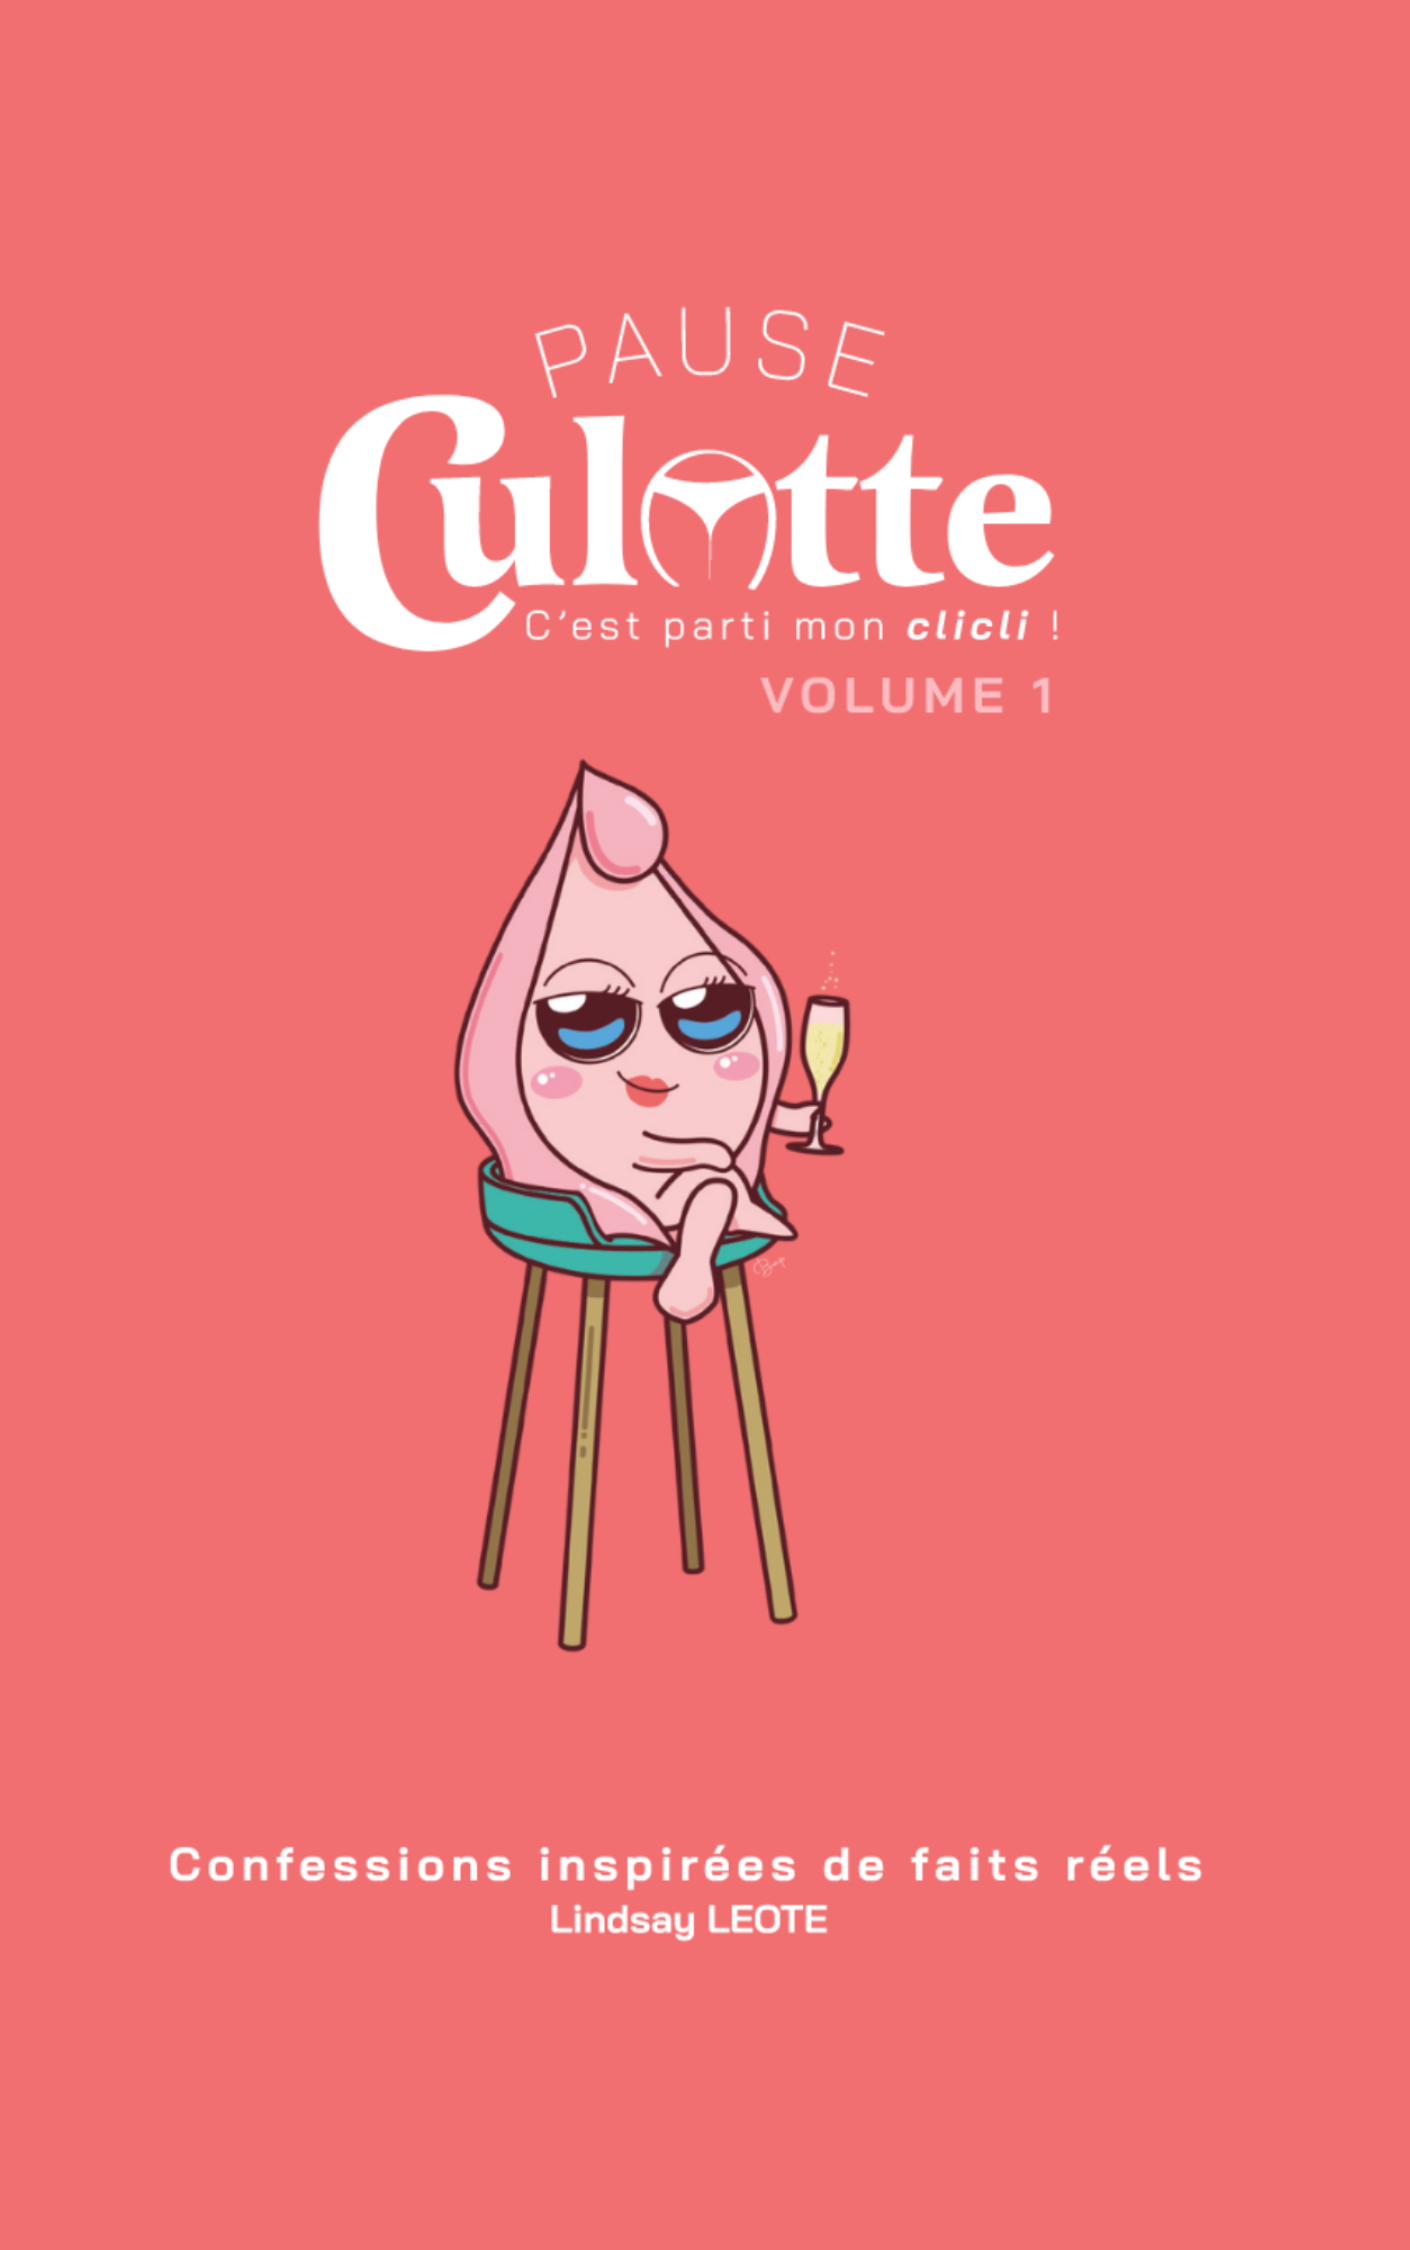 Pause Culotte - Volume 1 : Confessions intimes tirées de faits réels